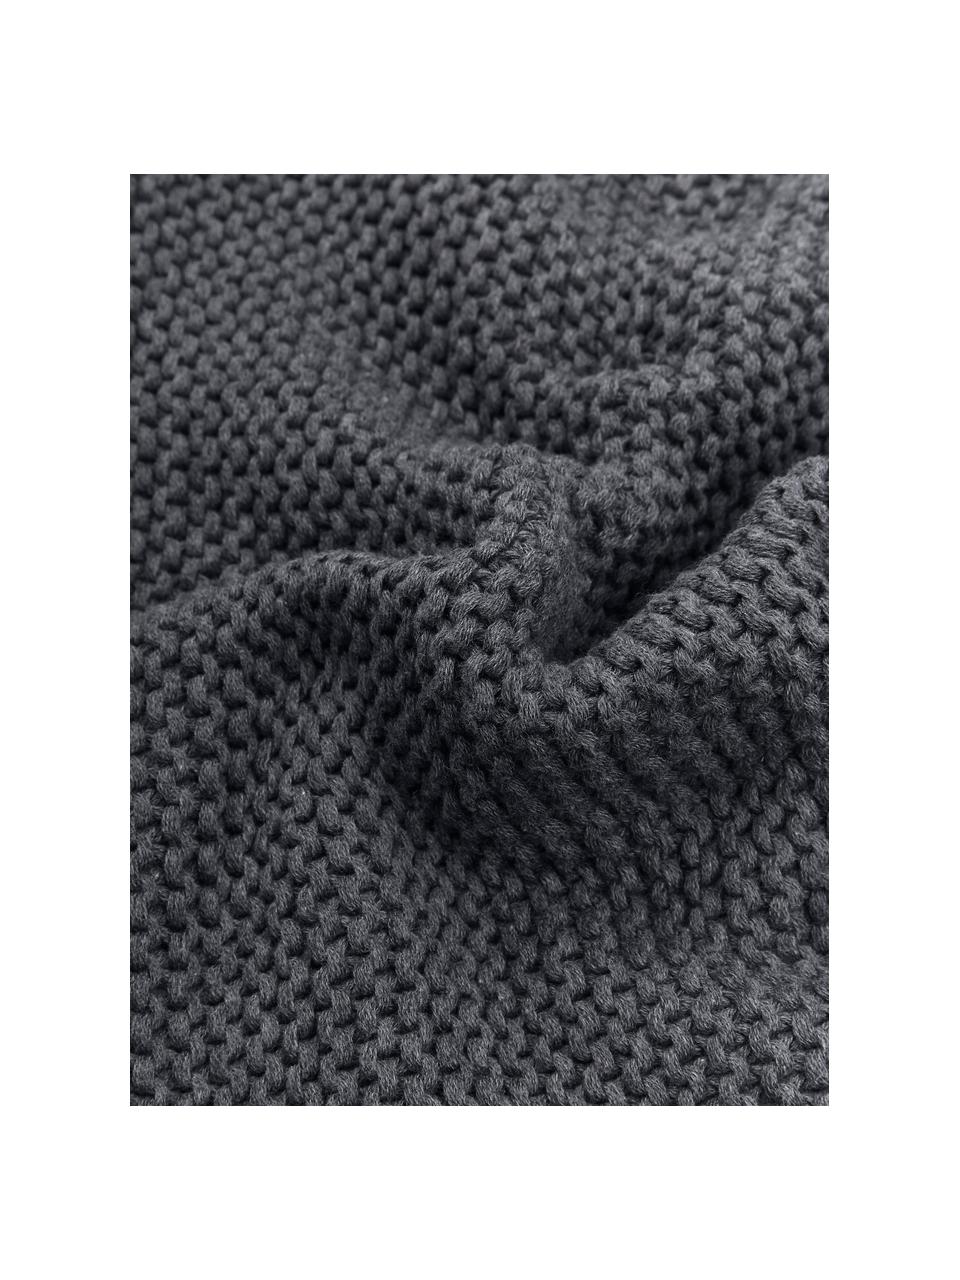 Gebreide kussenhoes Adalyn van biokatoen in donkergrijs, 100% katoen, Donkergrijs, B 40 x L 40 cm